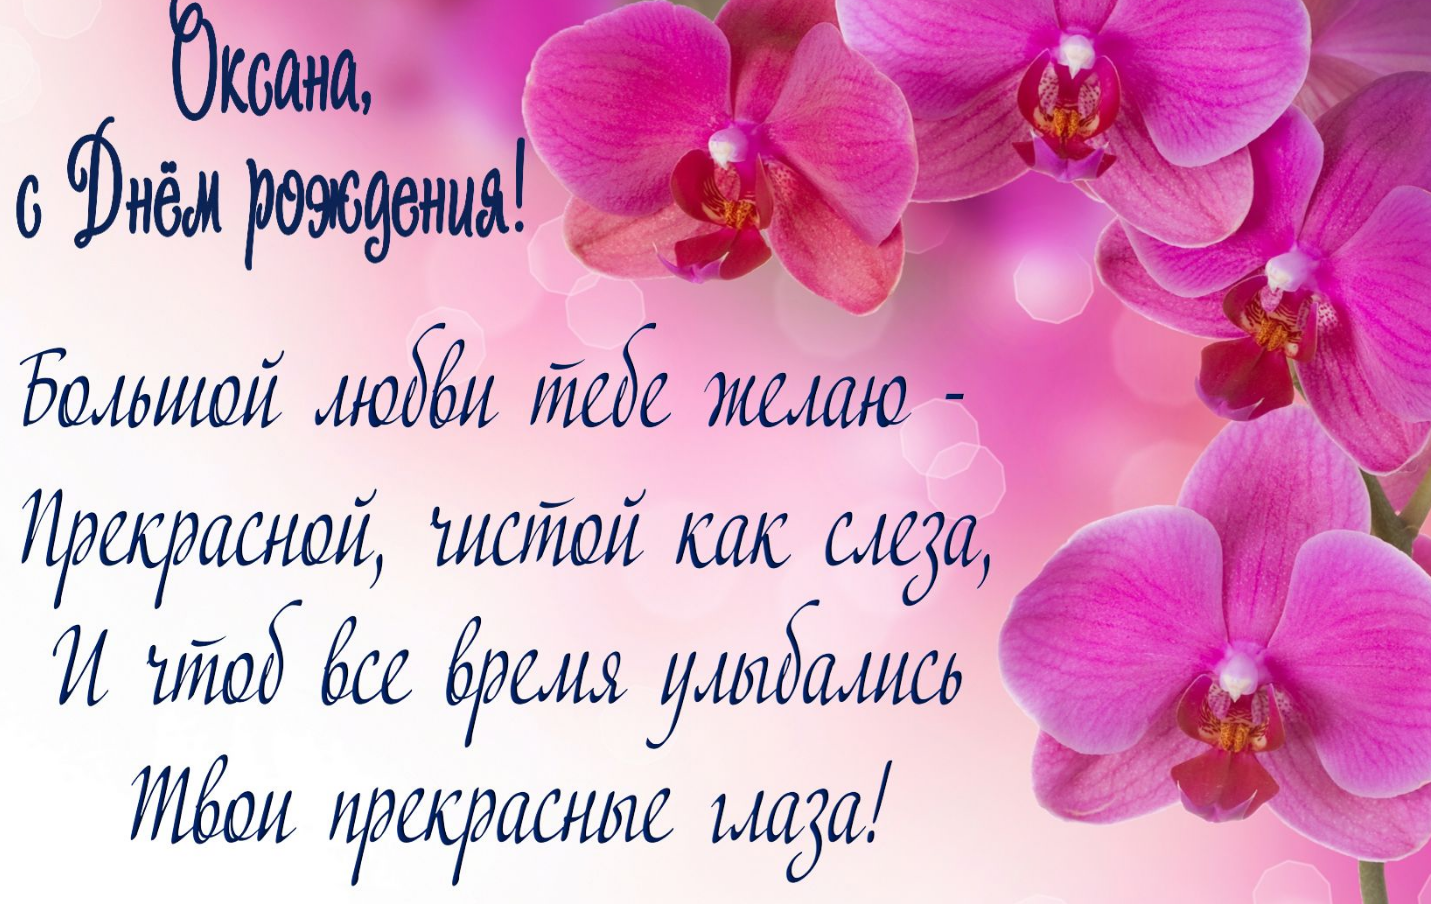 С днем рождения Оксана! Красивые и прикольные поздравления Ксюше в стихах и прозе